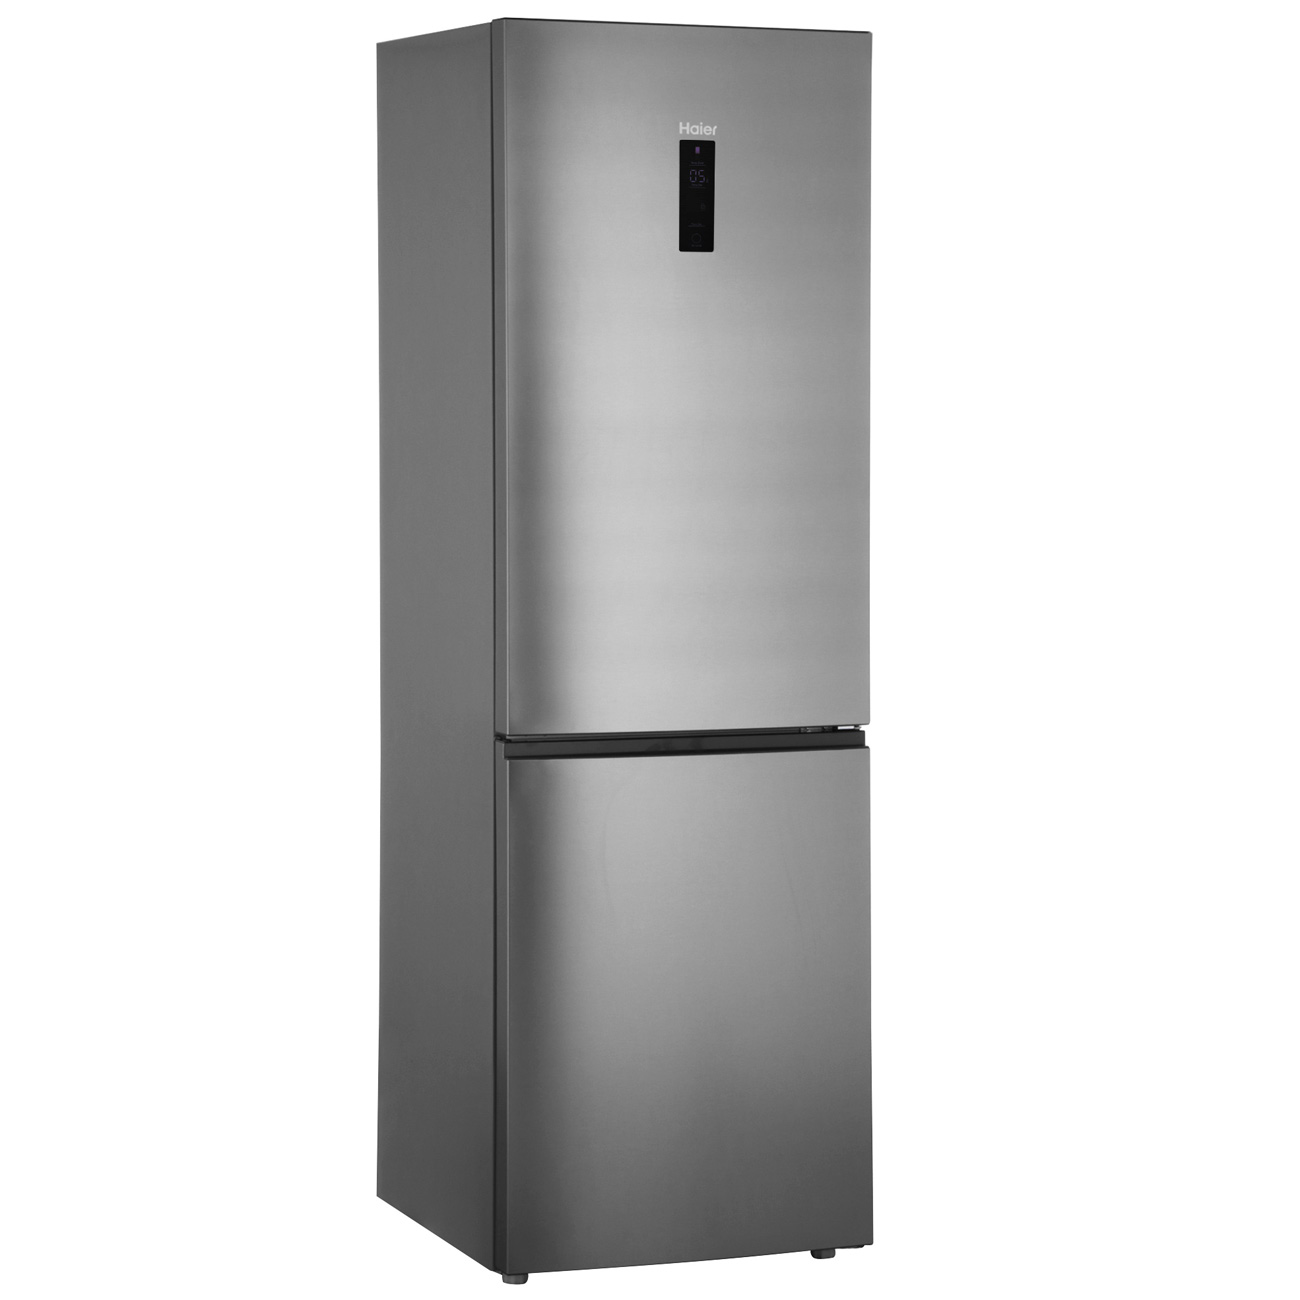 Производитель хайер отзывы. Холодильник Haier c2f636cffd. Холодильник Хаер c2f636cffd. Холодильник Хайер 636. Холодильник Хайер 640.